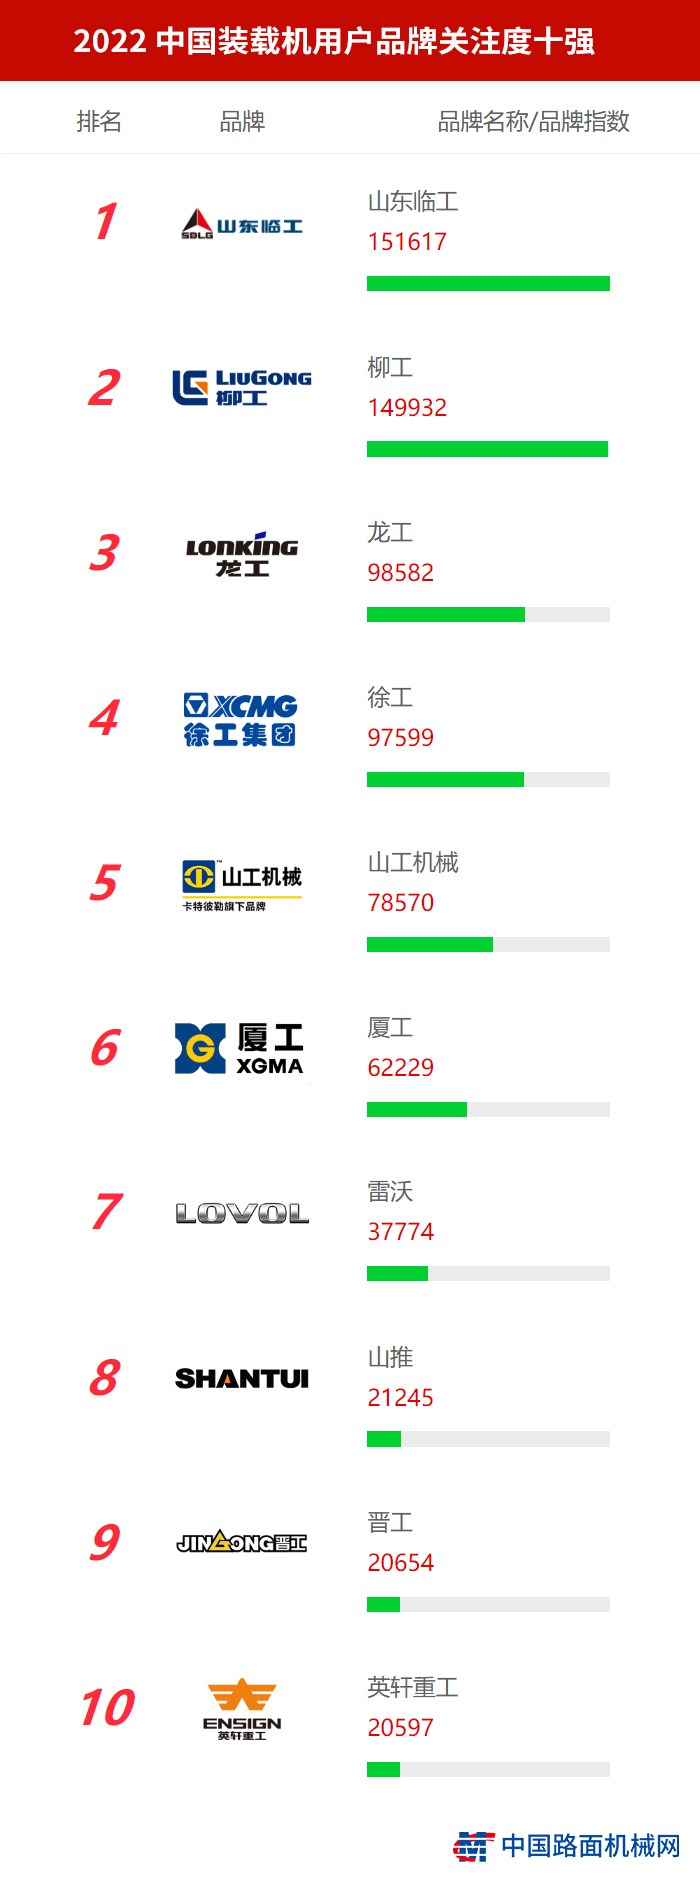 2022中國【裝載機】用戶品牌關注度十強榜單發布